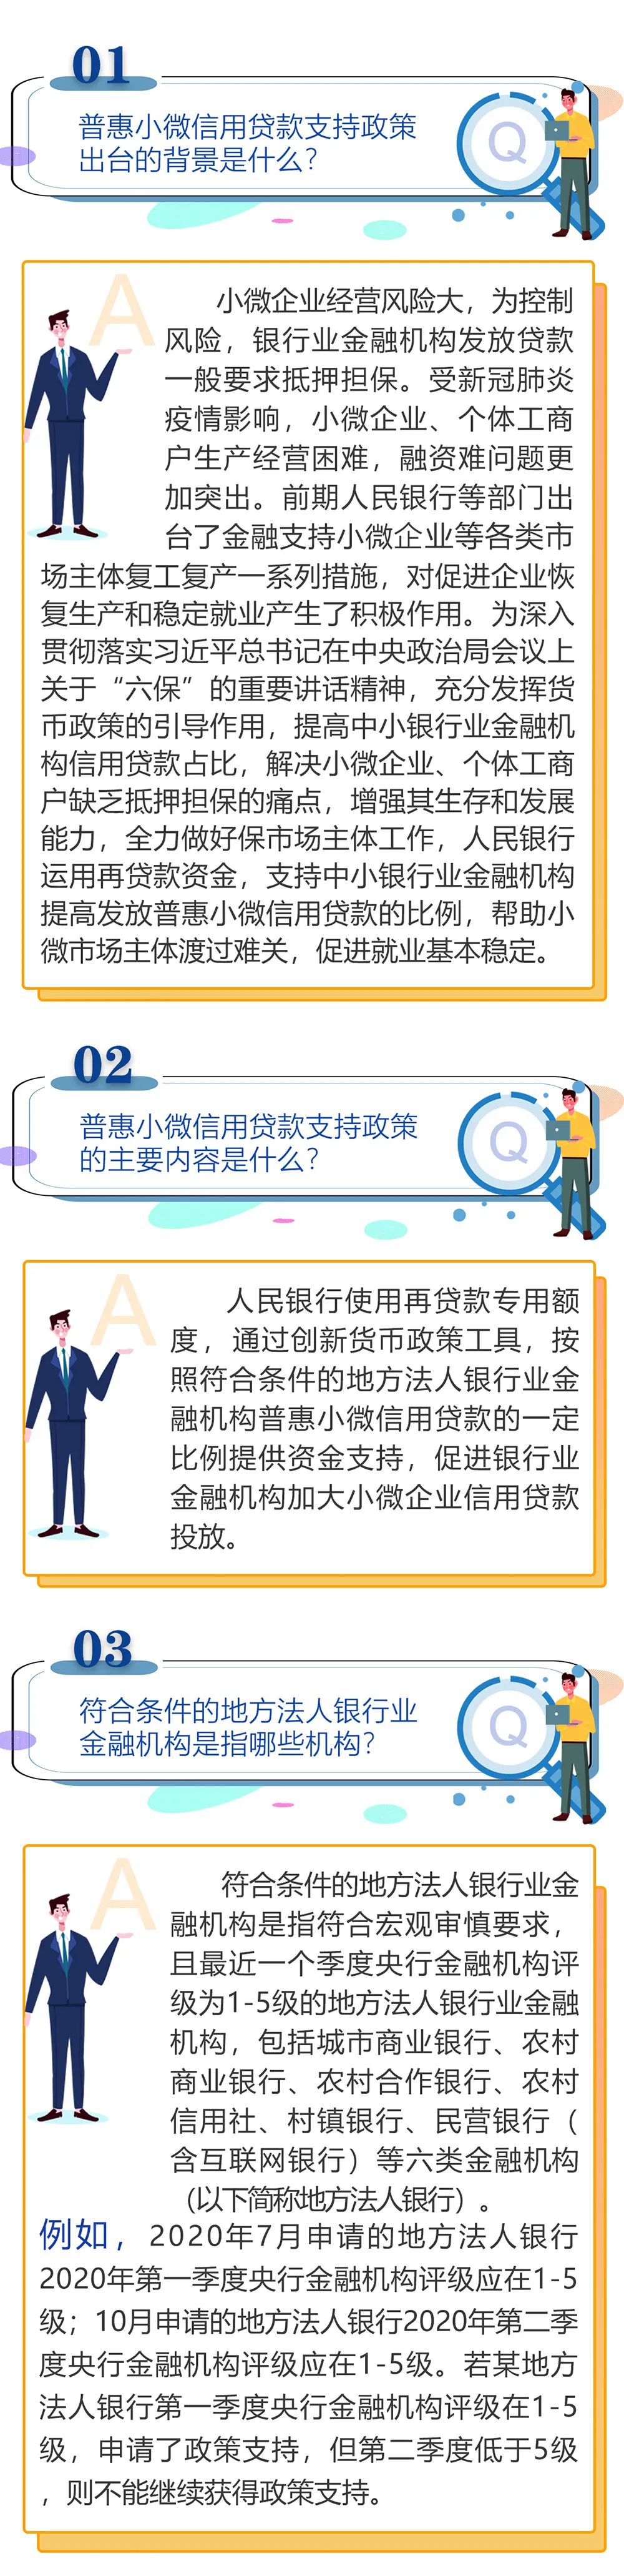 【政策指南】普惠小微信用贷款支持政策问答(图1)